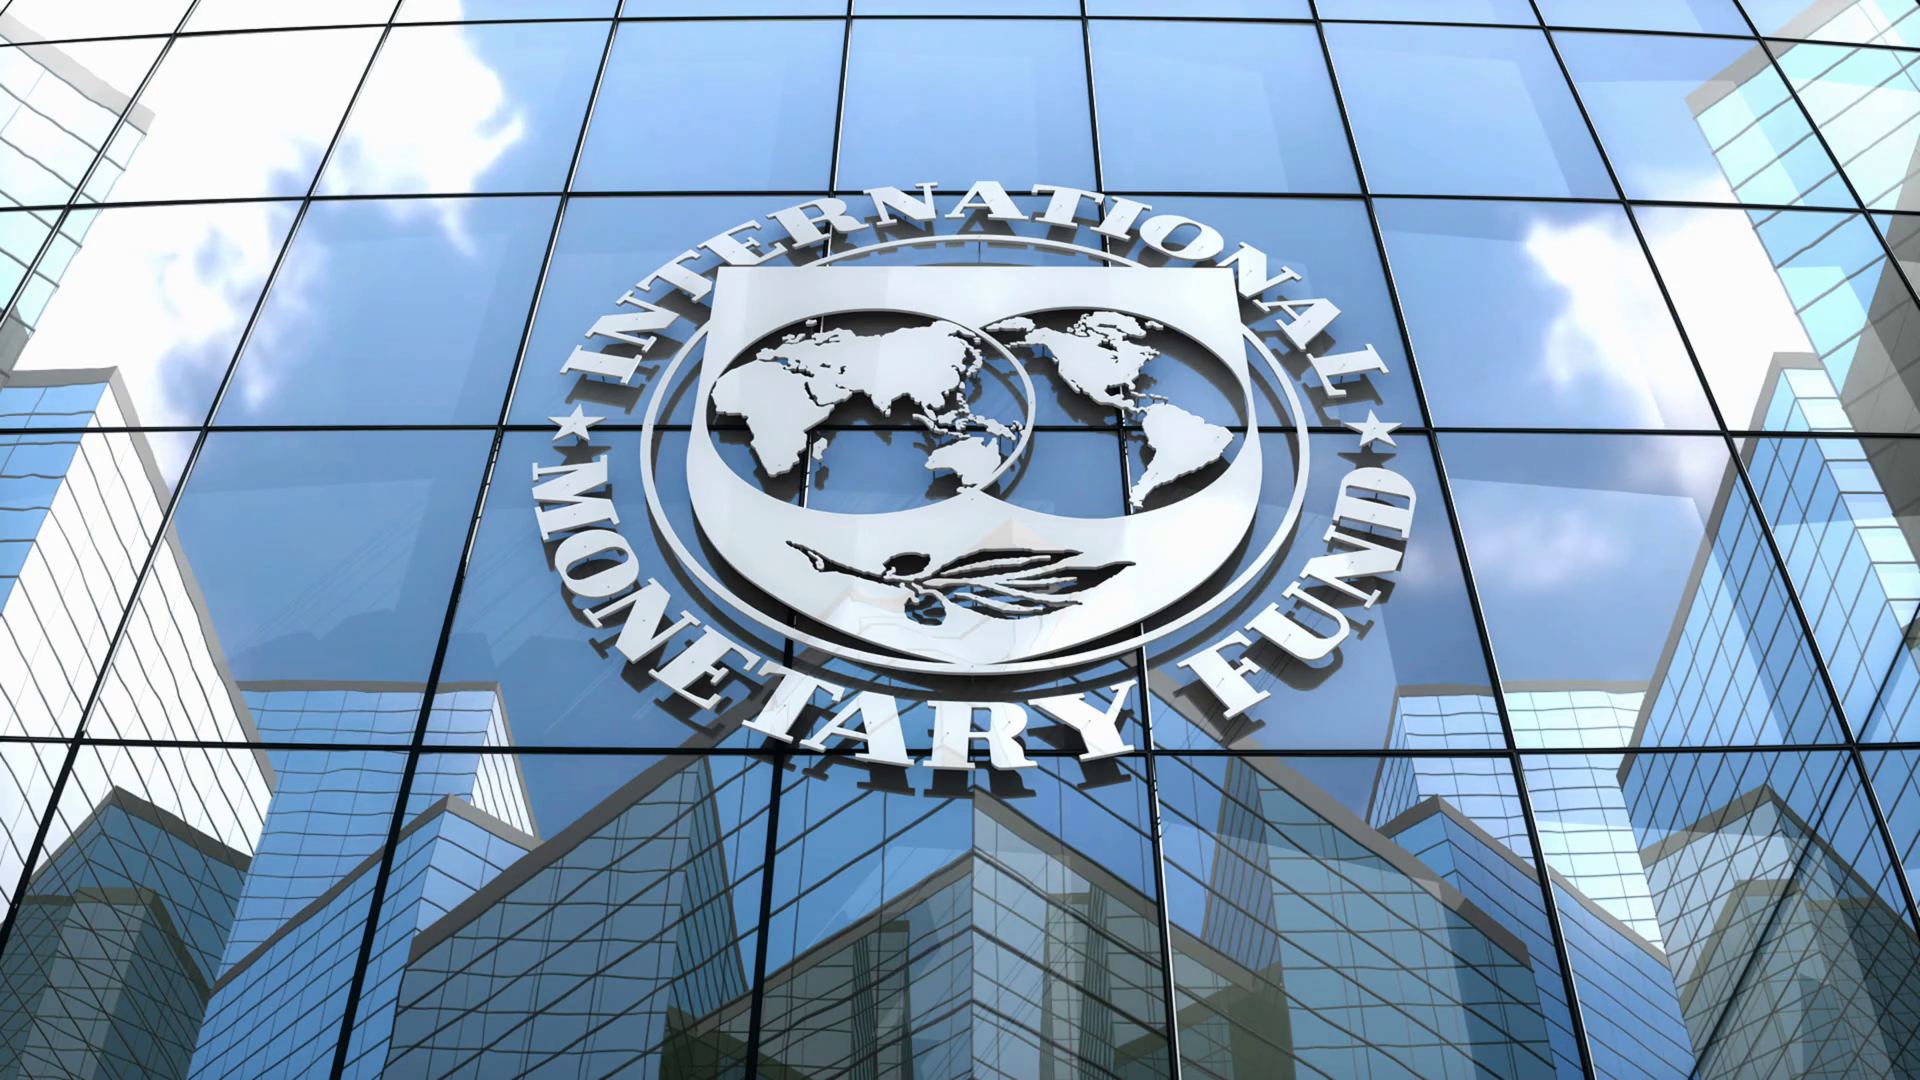 Фонд всемирный банк. Международный валютный фонд, IMF. МВФ ООН. Штаб квартира МВФ В Вашингтоне. Международный валютный фонд здание.